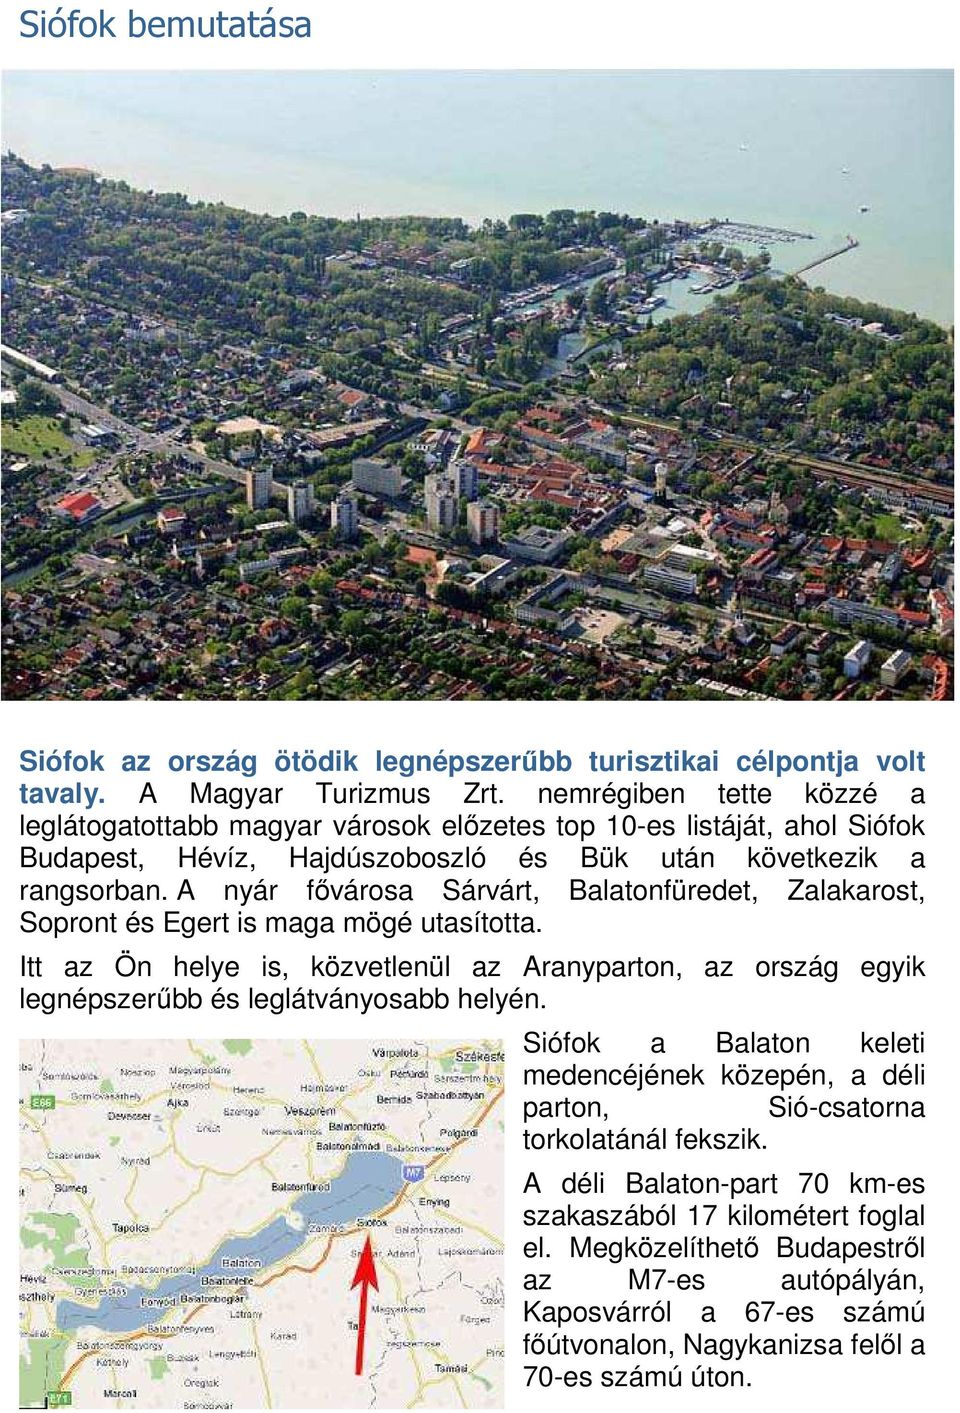 A nyár fővárosa Sárvárt, Balatonfüredet, Zalakarost, Sopront és Egert is maga mögé utasította.